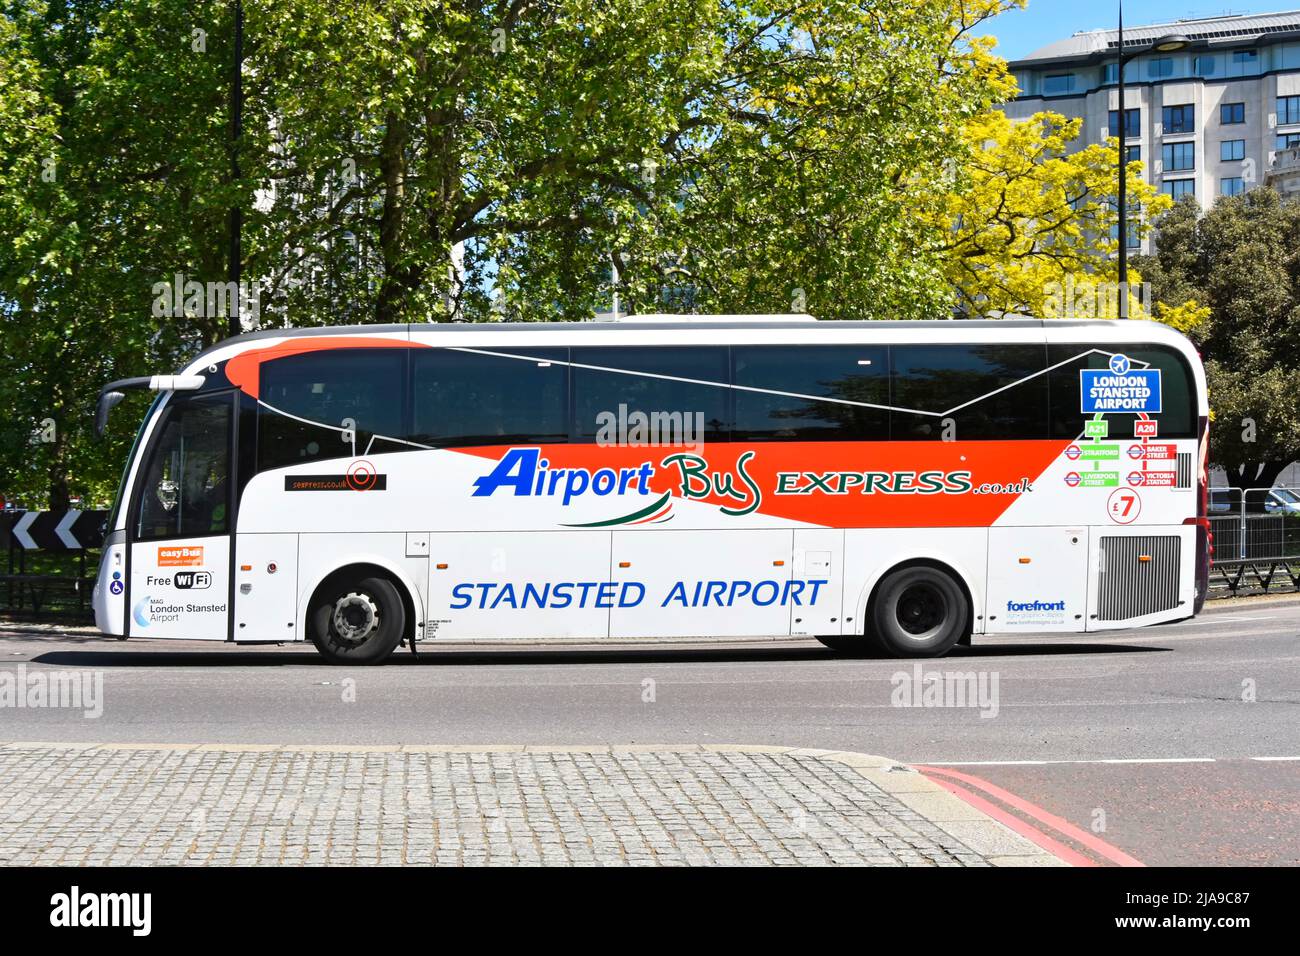 Vista lateral del conductor y gráfico publicitario en el servicio de autobús Easy Bus Stansted Airport Express en Park Lane con salida en Londres, Inglaterra, Reino Unido Foto de stock